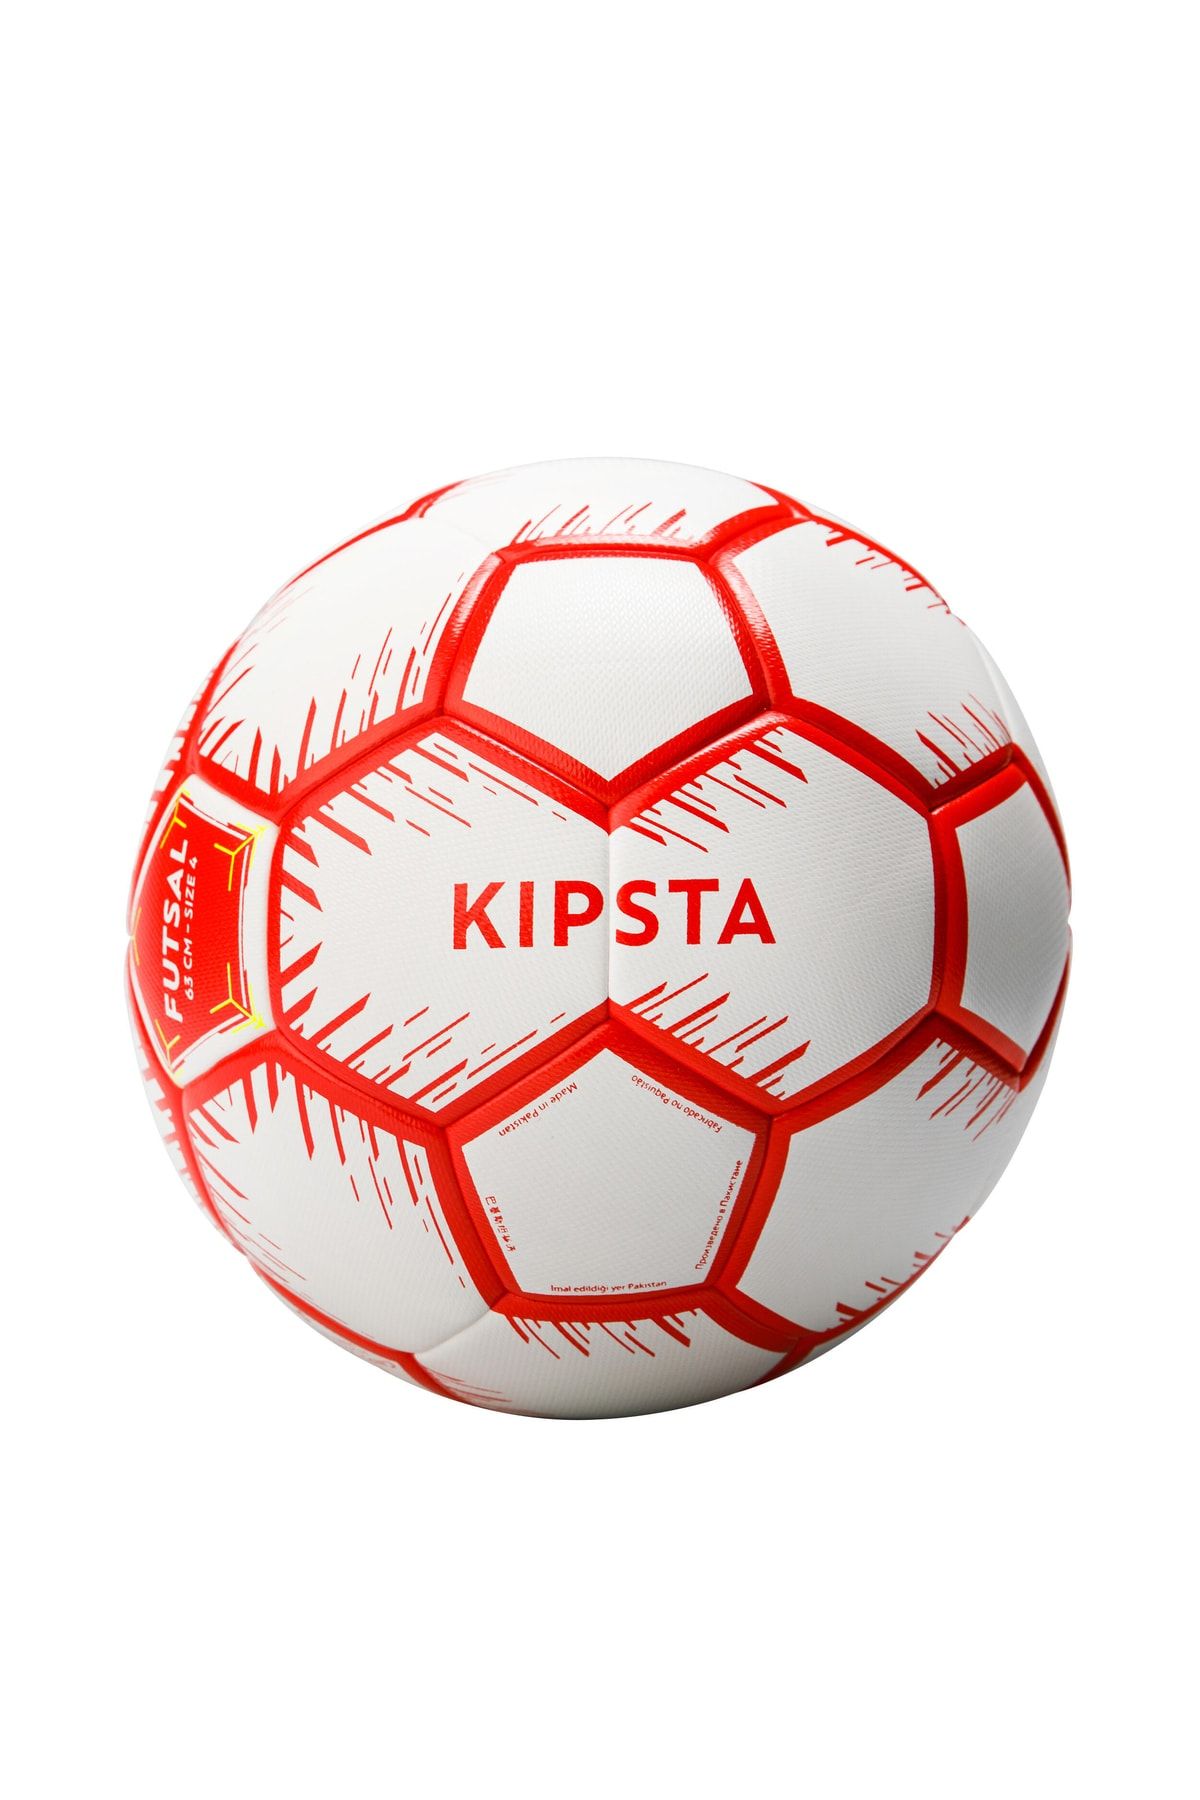 Decathlon Kipsta Futsal Topu - 4 Numara - 63 Cm - Kırmızı / Beyaz 100